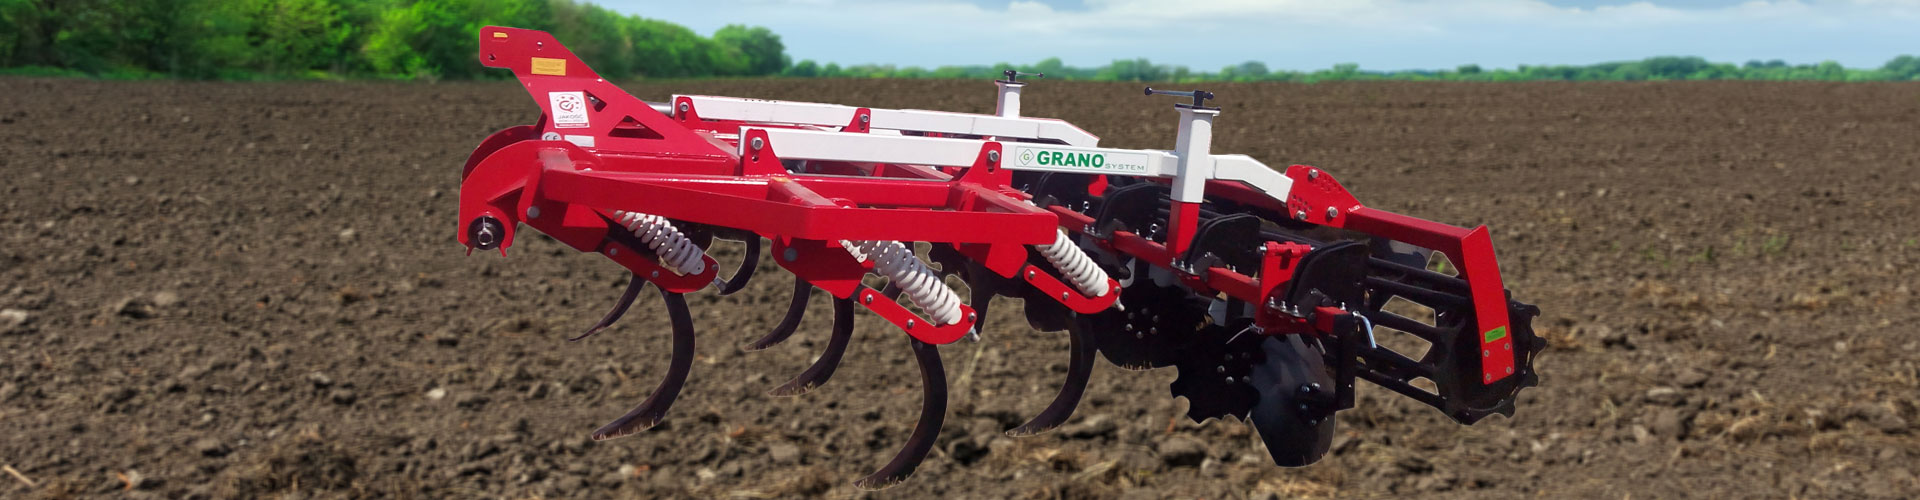 GRANO-SYSTEM Produzent der landwirtschaftlichen Technik der MaschinenAggregate für Verarbeitung des Bodens Kultivierungen Polen